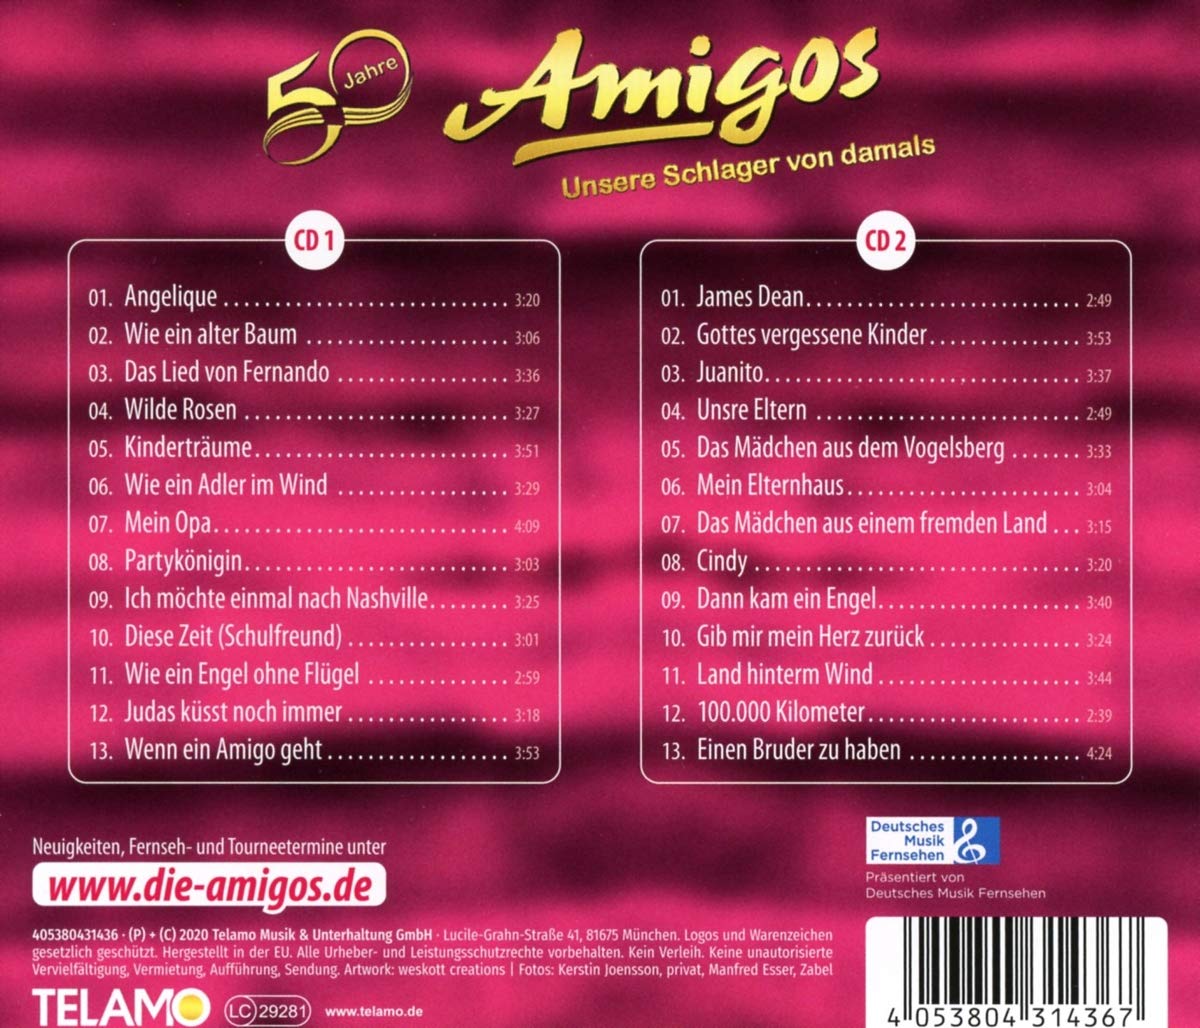 Amigos - 50 Jahre: Unsere Schlager von damals (2020)